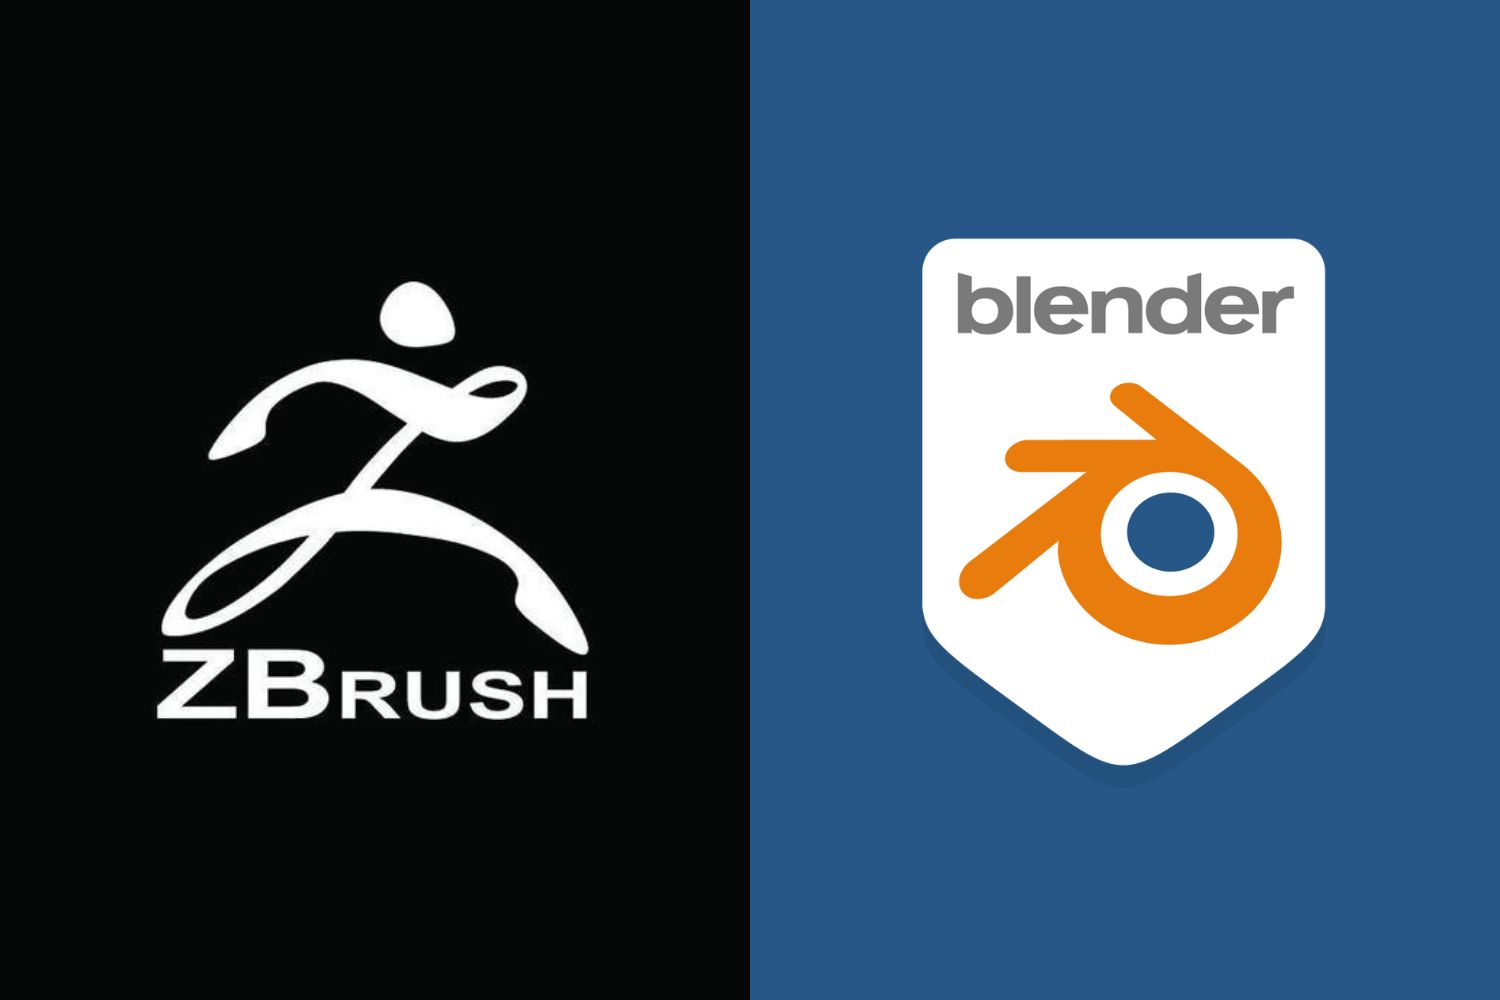 Zbrush vs Blender logos 